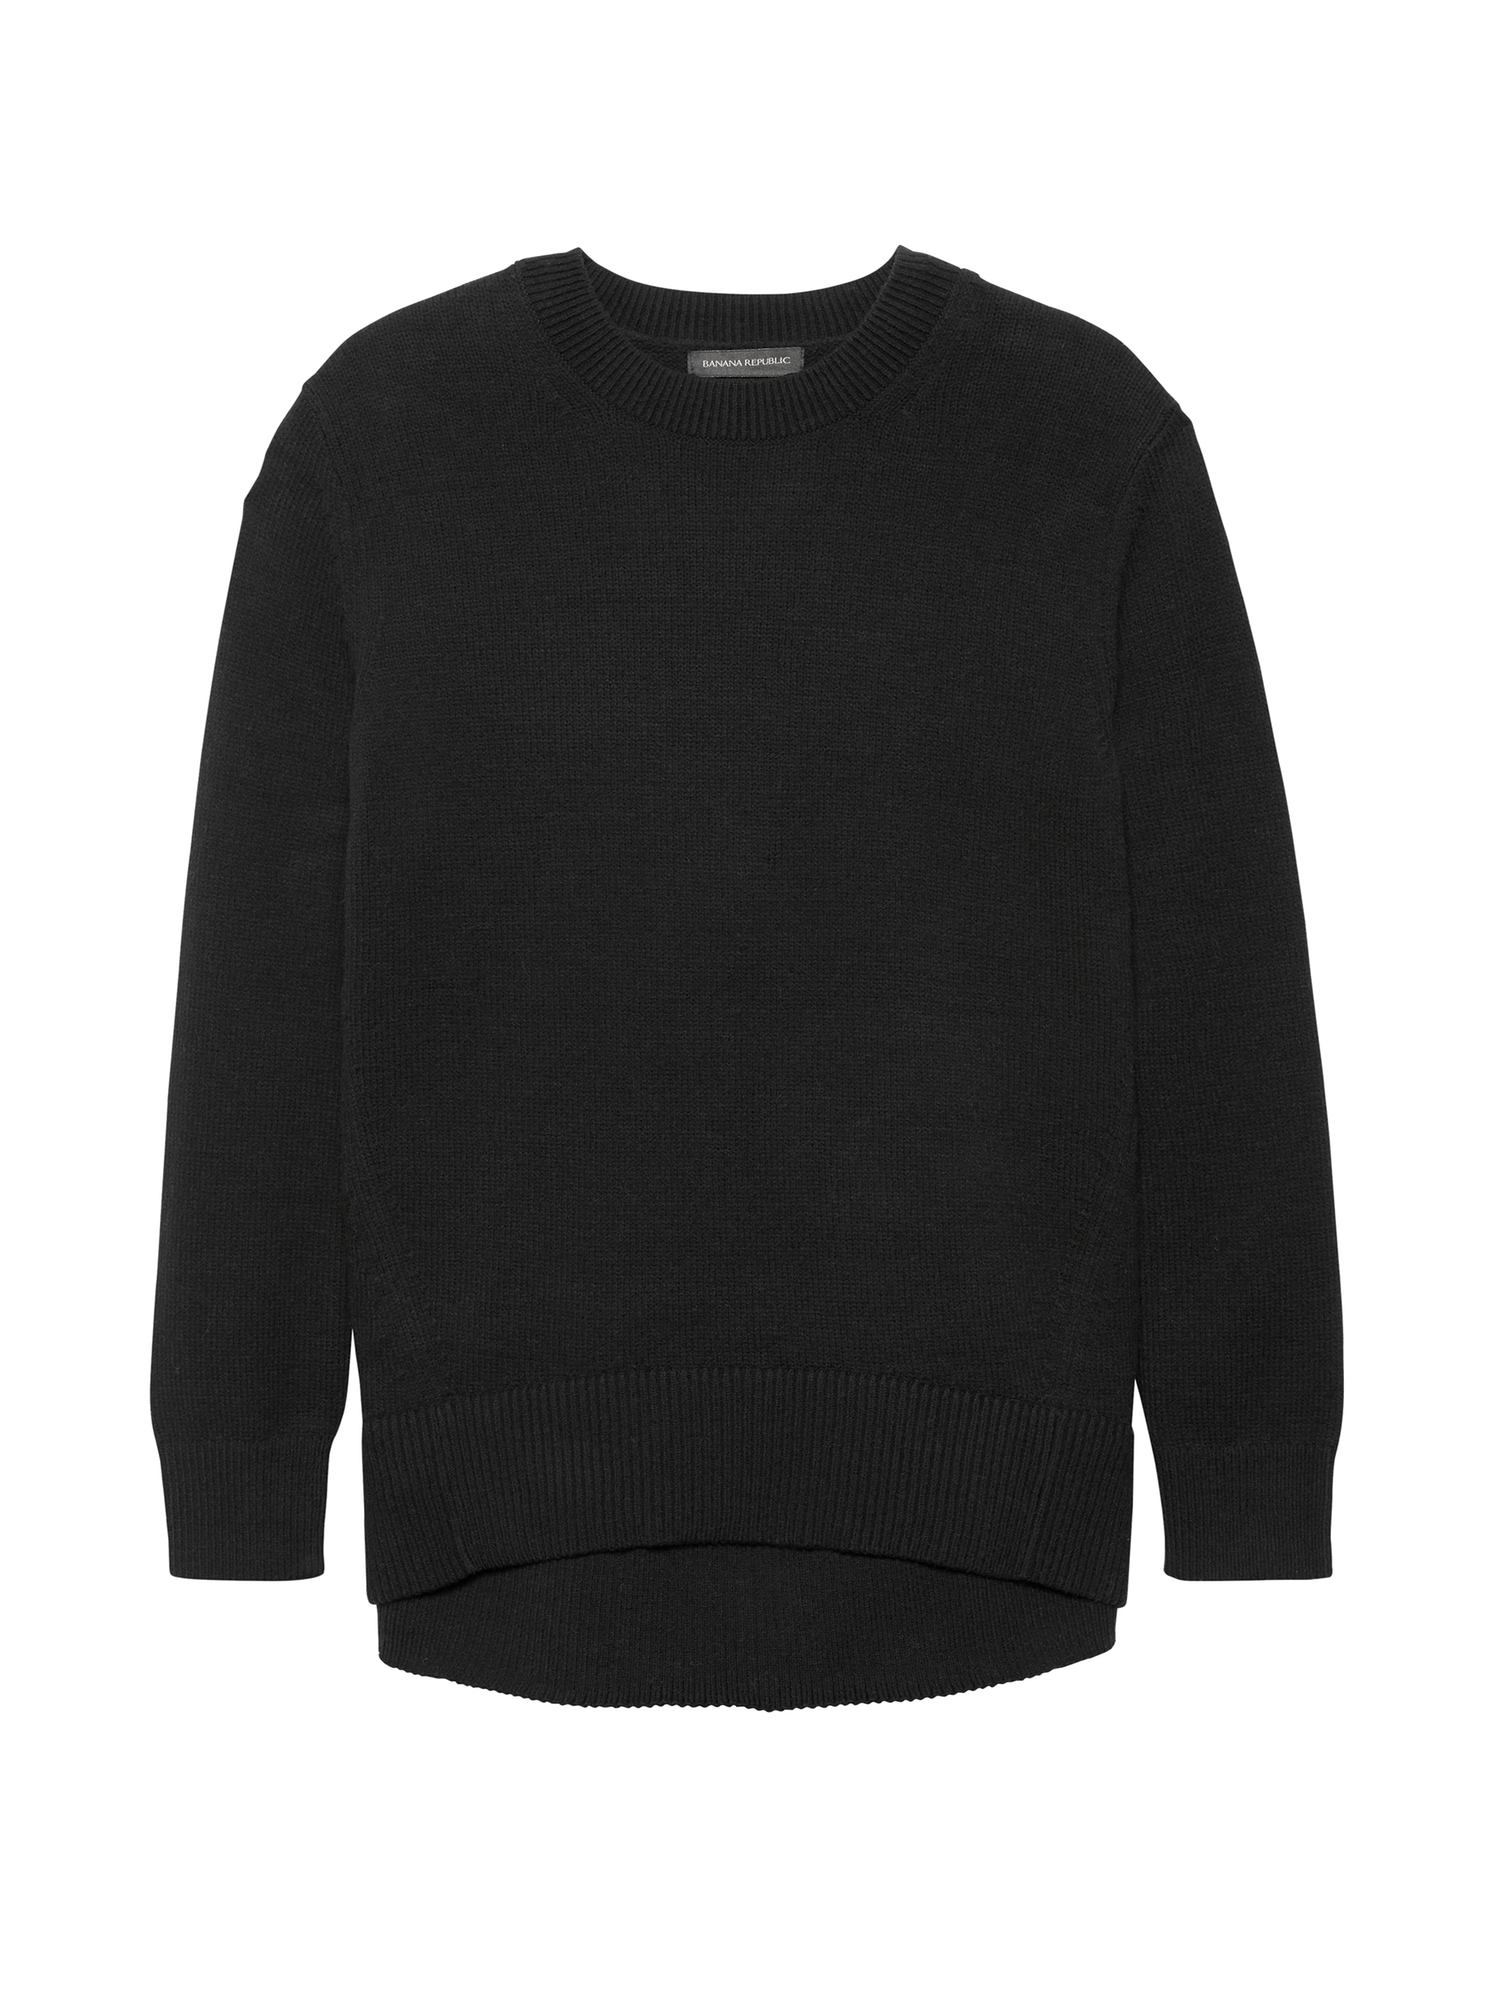 Supersoft Cotton Blend Boyfriend Crew-Neck Sweater